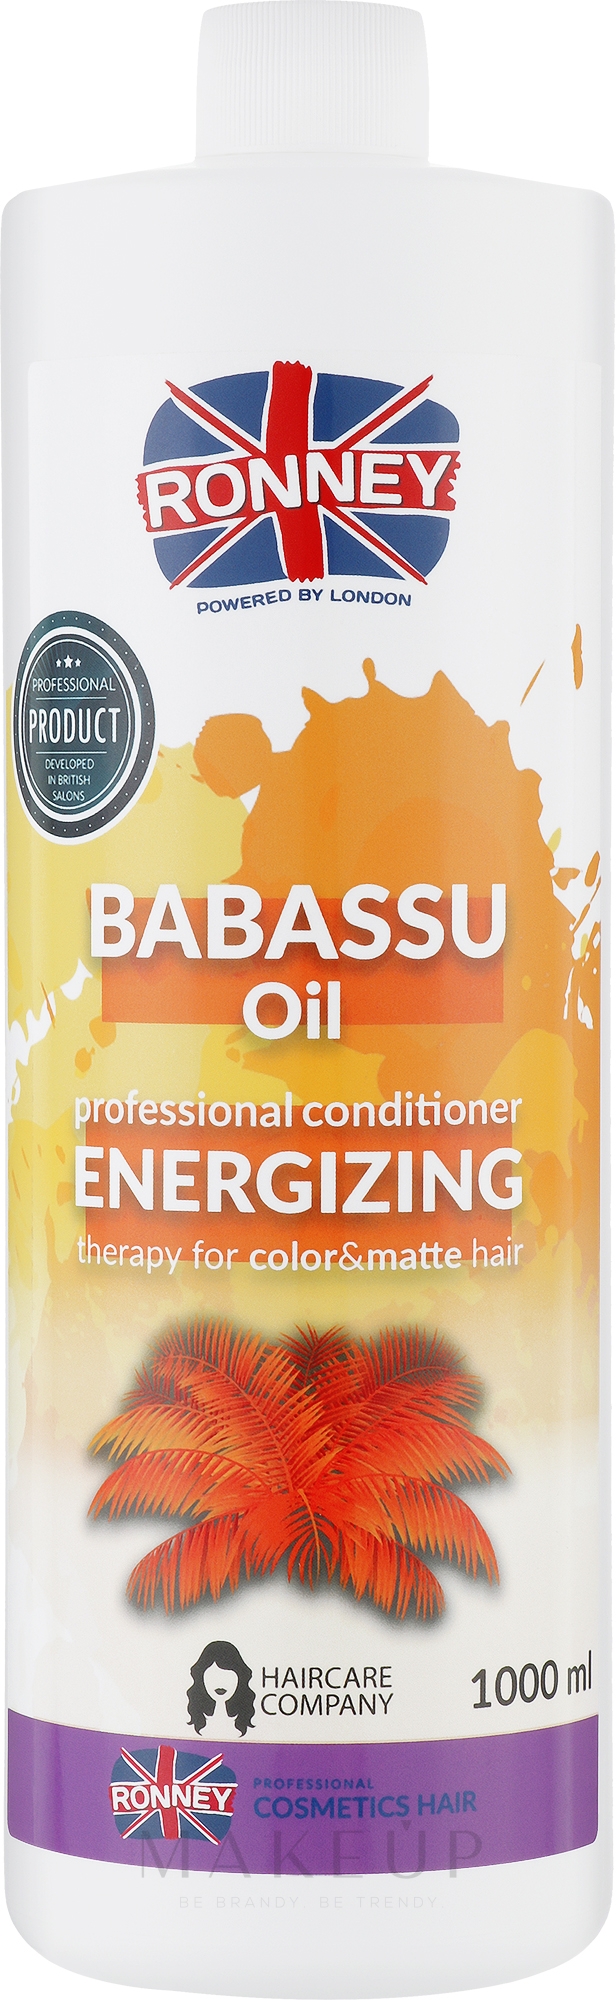 Haarspülung mit Babassu für gefärbtes Haar - Ronney Professional Babassu Oil Energizing Conditioner — Bild 1000 ml